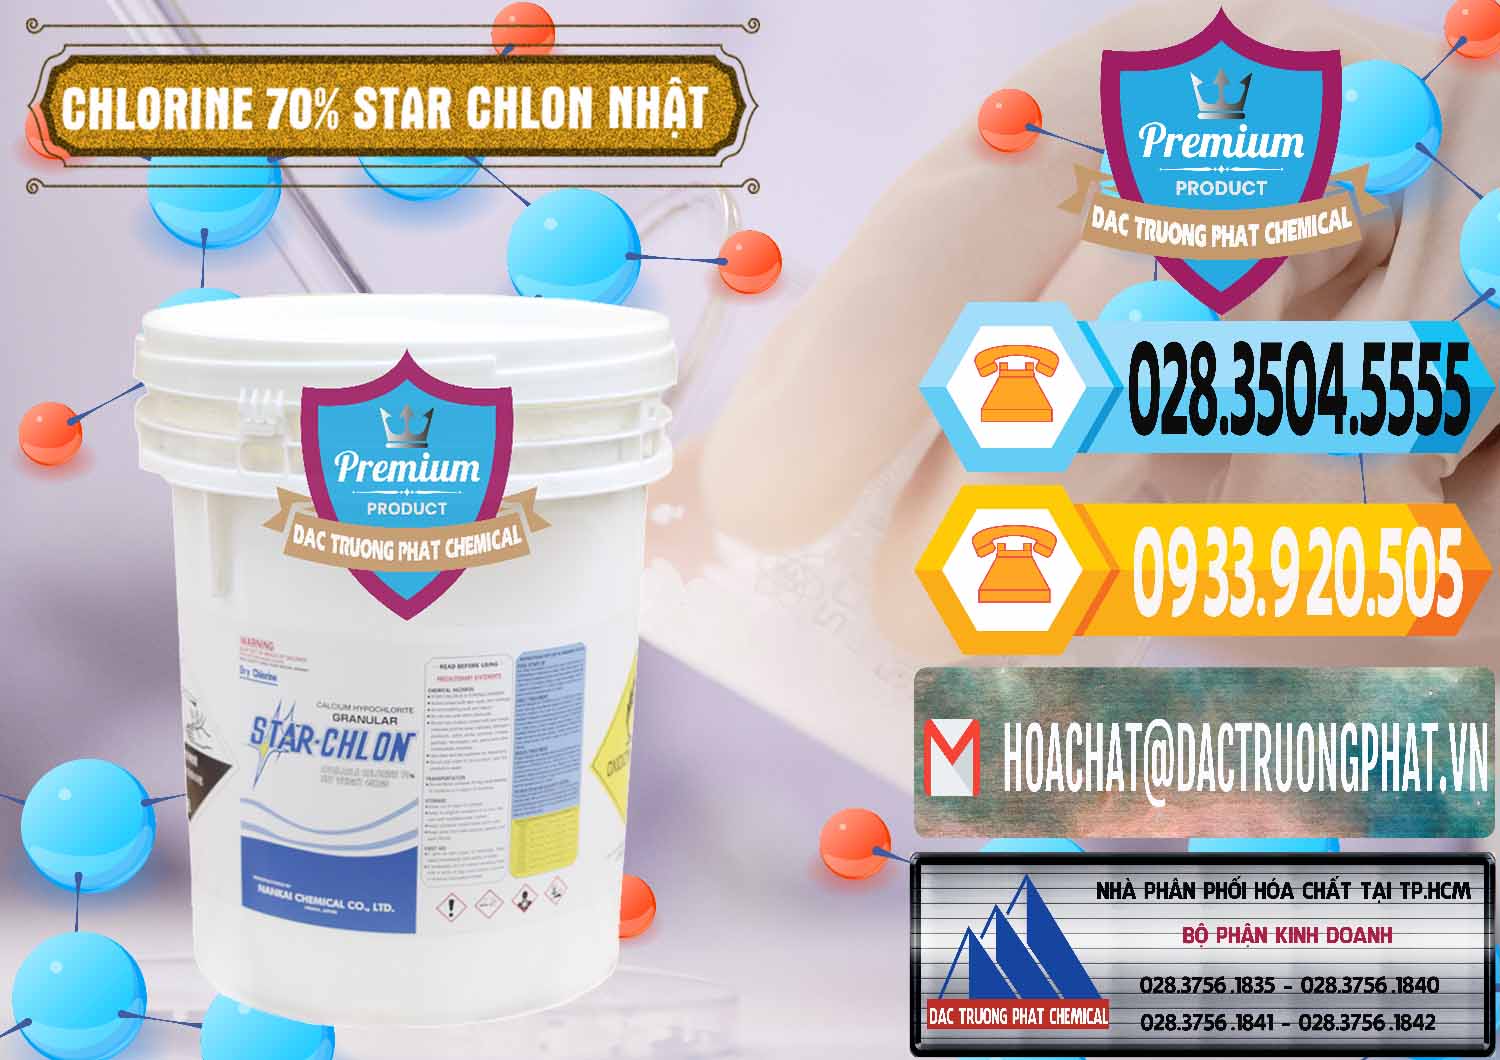 Công ty chuyên bán và phân phối Clorin – Chlorine 70% Star Chlon Nhật Bản Japan - 0243 - Cty bán - cung cấp hóa chất tại TP.HCM - hoachattayrua.net